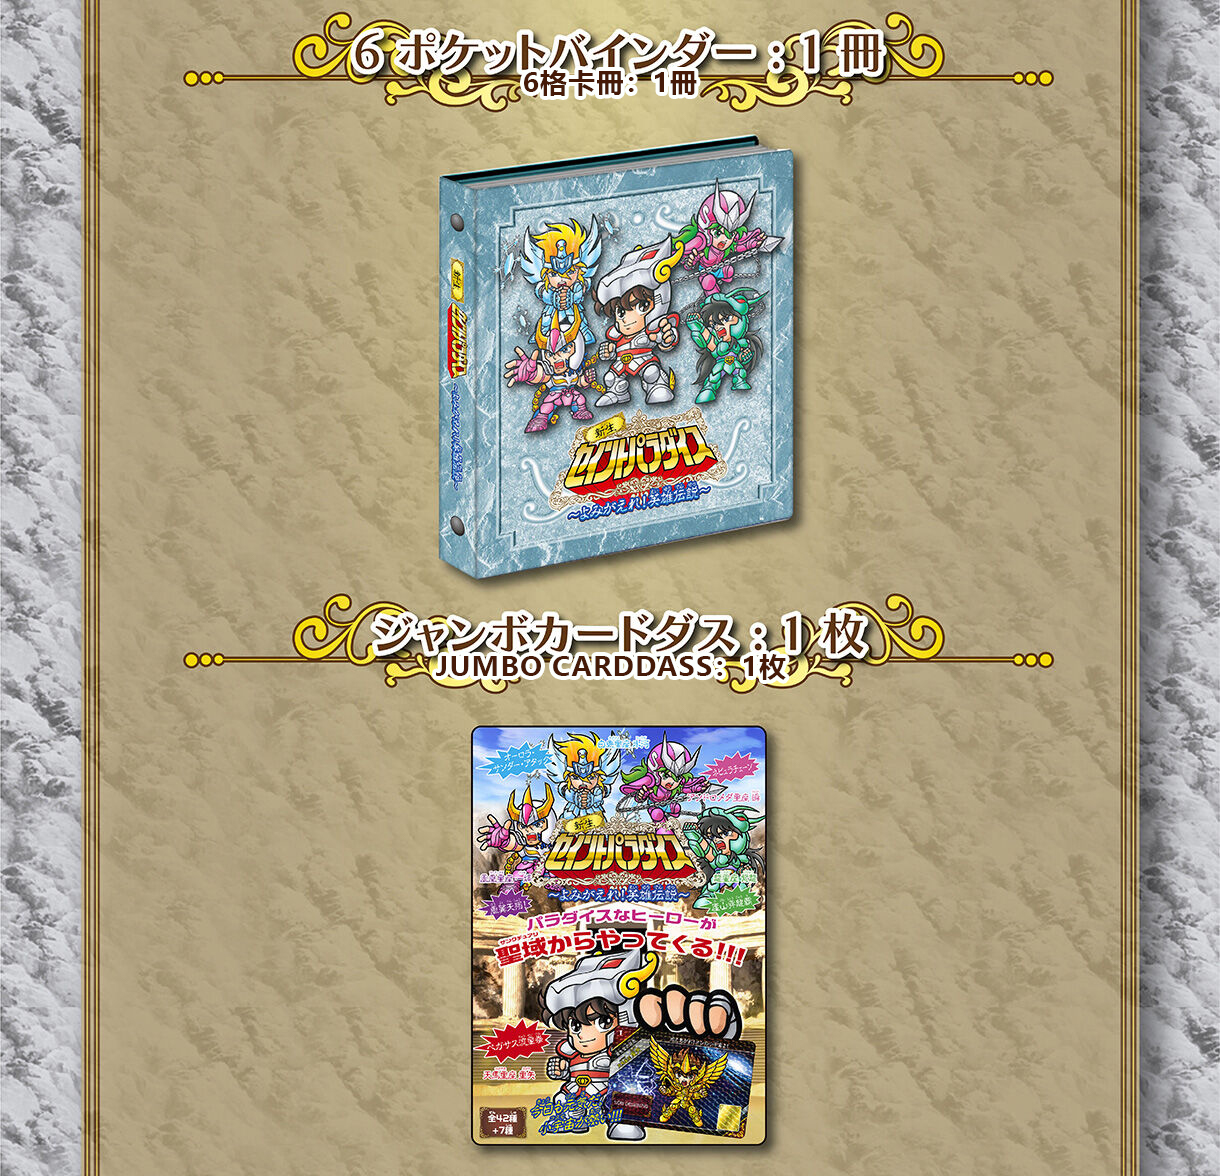 Eiyuu Densetsu Premium Bandai Carddass Saint Seiya New Saint Paradise Revive